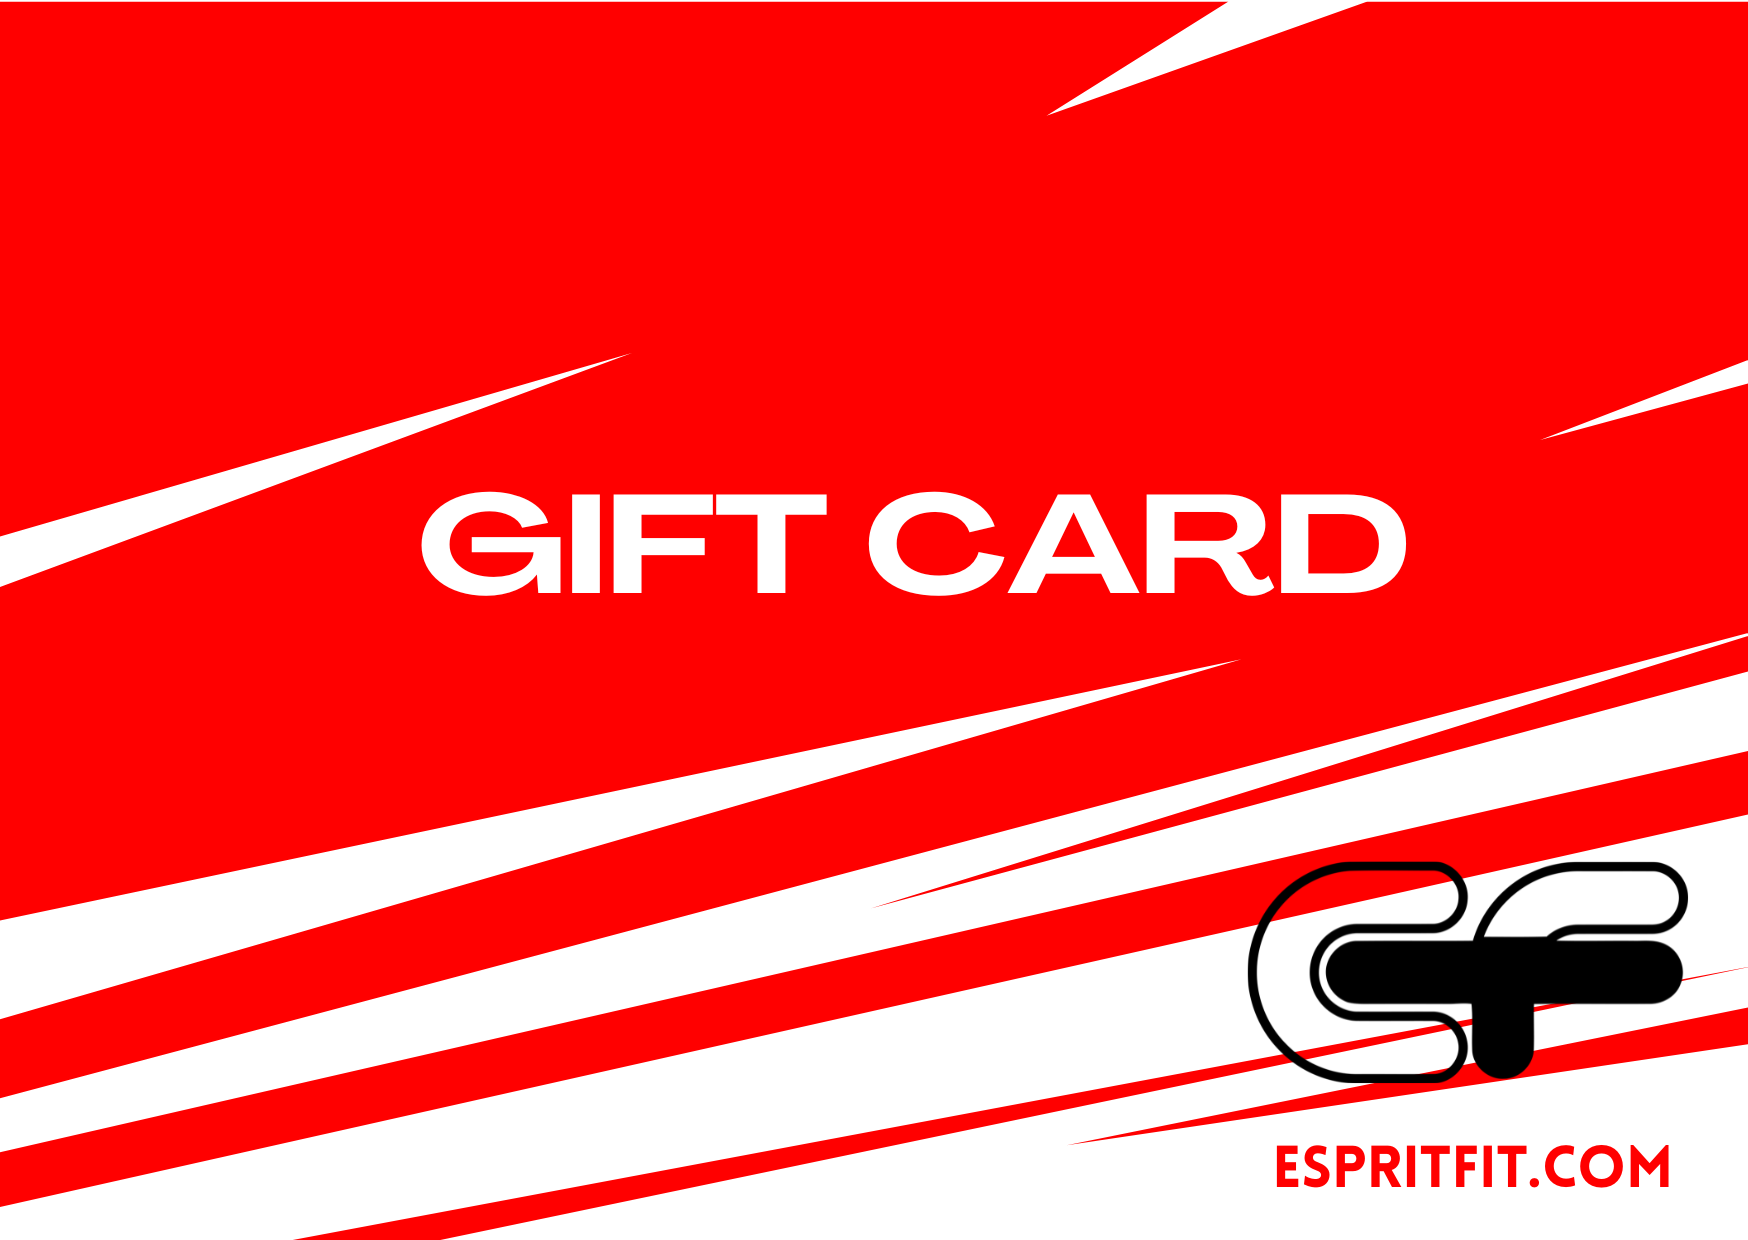 Espritfit Gift Card - Espritfit